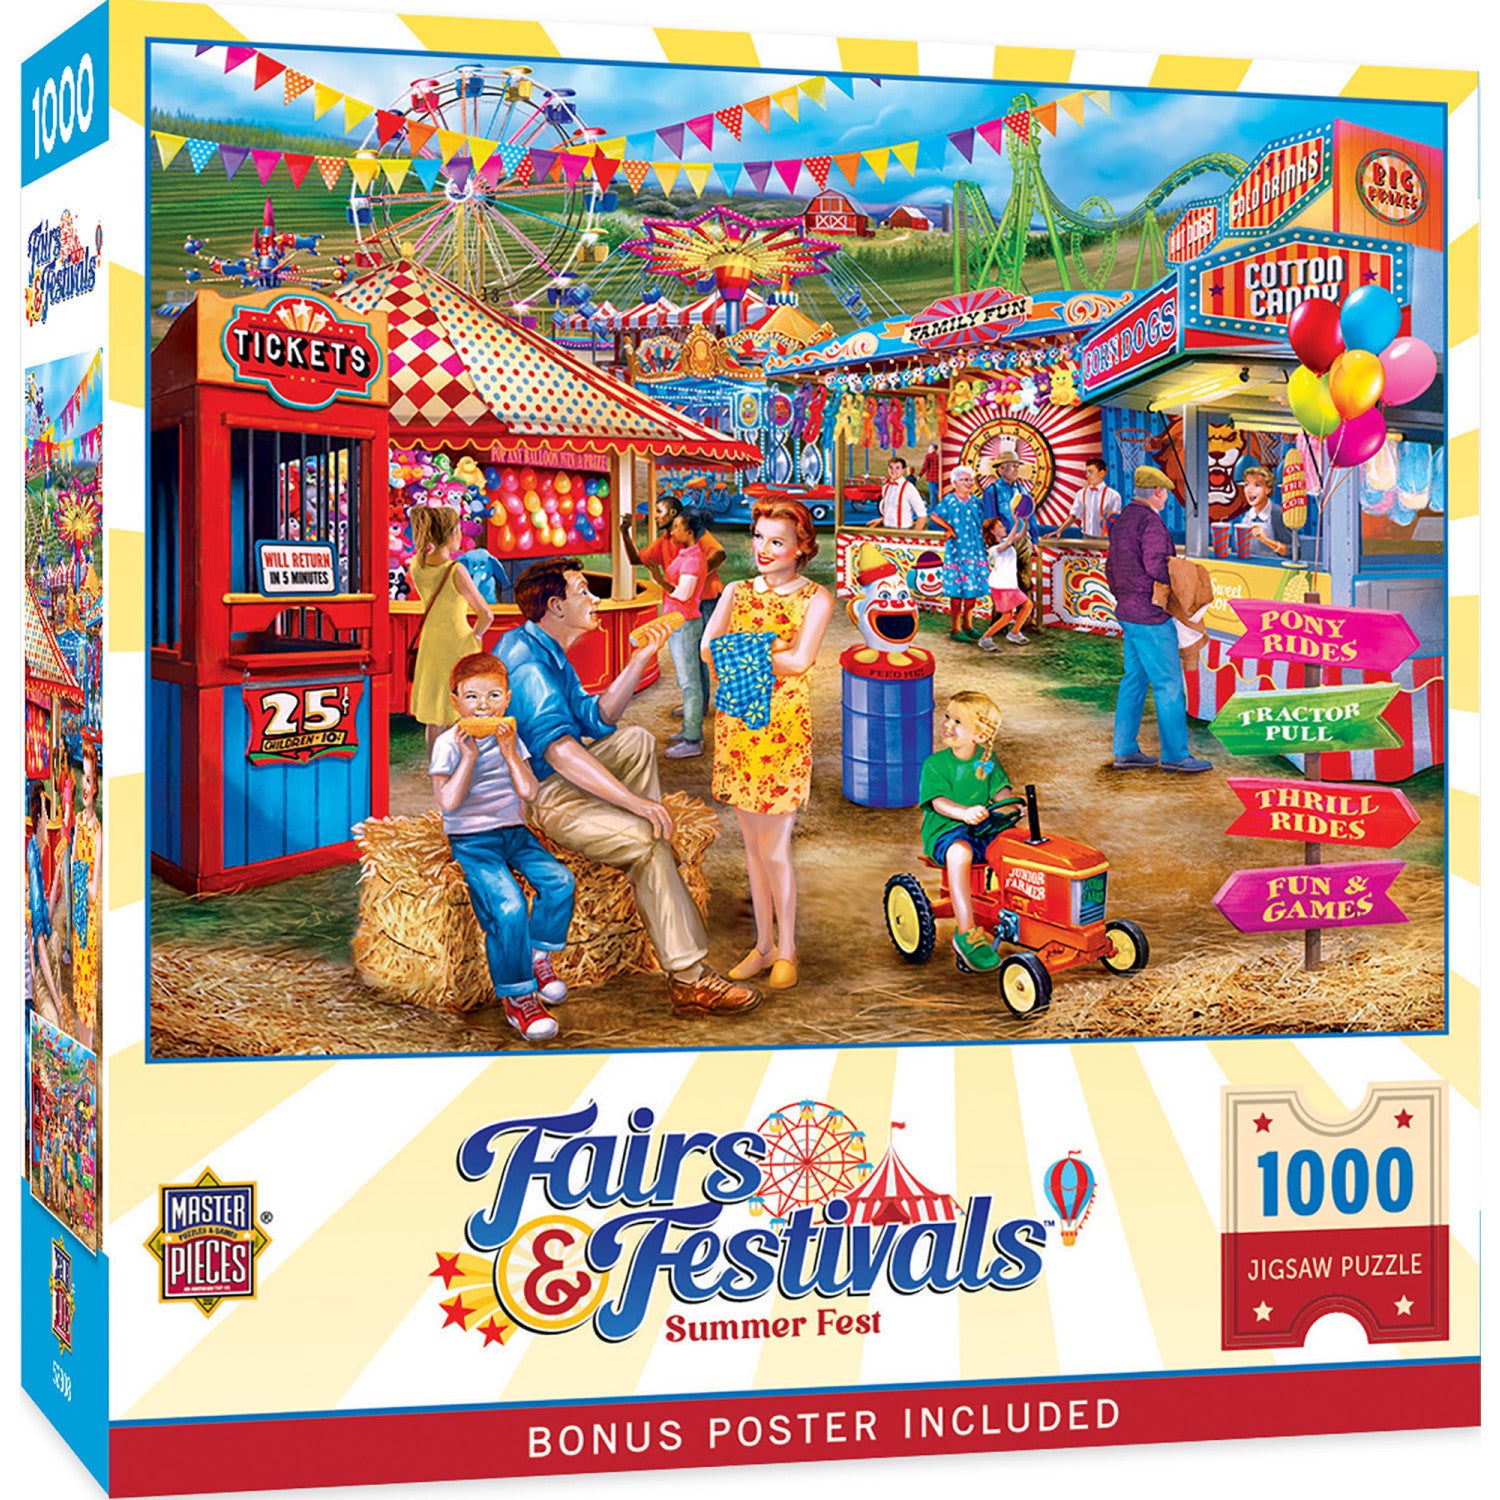 Fairs & Festivals - Summer Fest 1000 Piece Puzzle